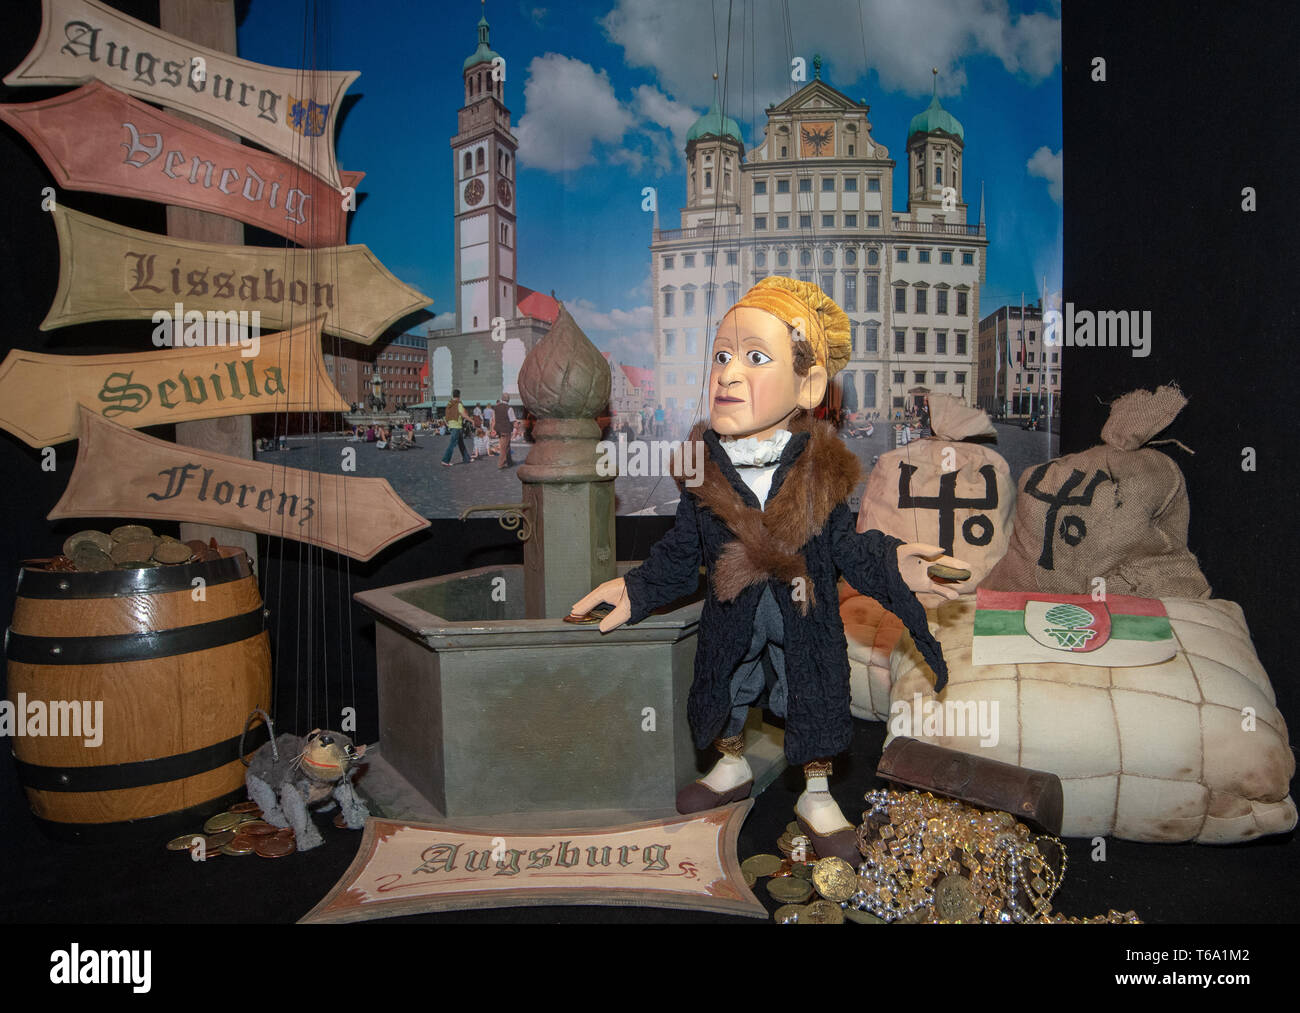 Augsburg, Deutschland. 30 Apr, 2019. Im Augsburger Puppentheatermuseum 'Die  Kiste' gibt es eine Marionette, die Jakob Fugger in einem Szenario mit dem  Augsburger Rathaus und Wegweiser, die Routen zu handeln. Das Museum